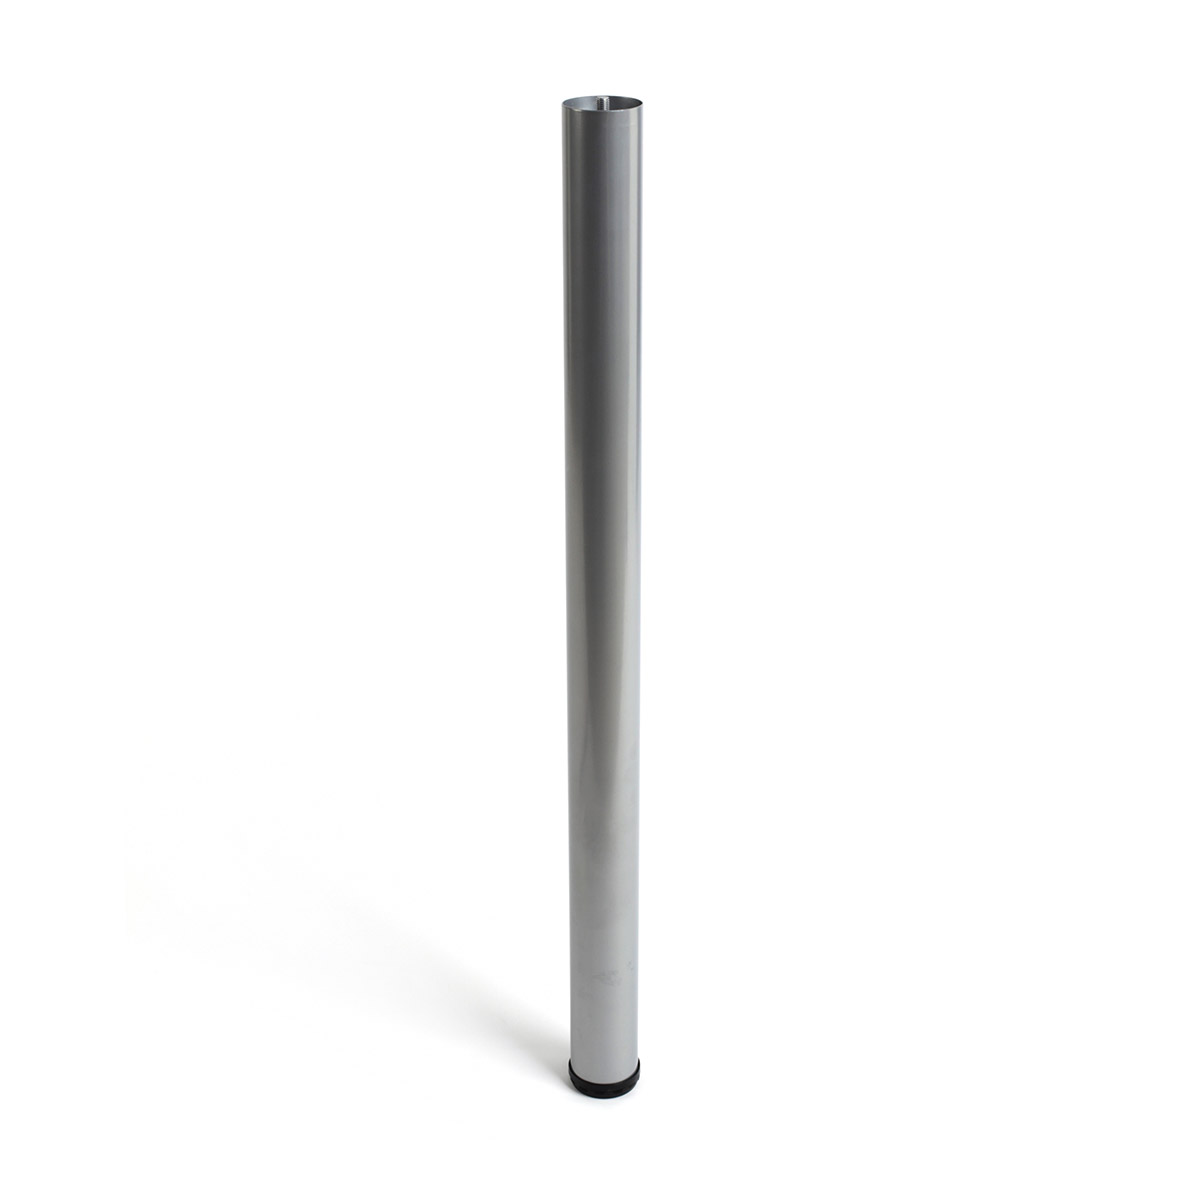 Pata de acero cilíndrica con una altura de 860 mm y acabada en aluminio. Dimensiones: 60x60x860 mm